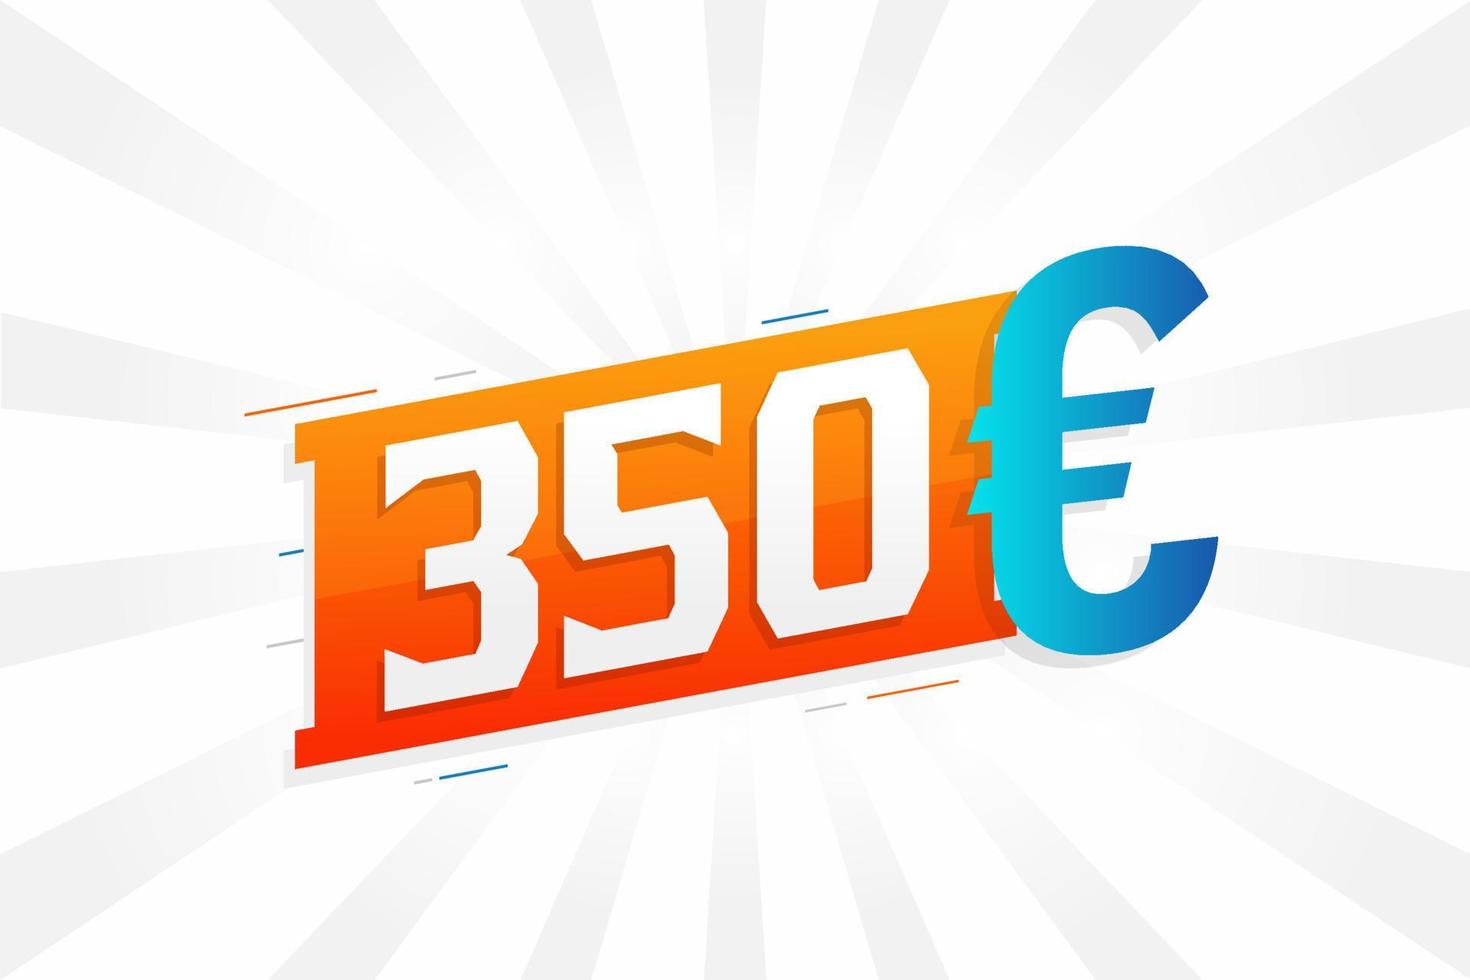 Symbole de texte vectoriel de devise de 350 euros. 350 euros vecteur de stock d'argent de l'union européenne